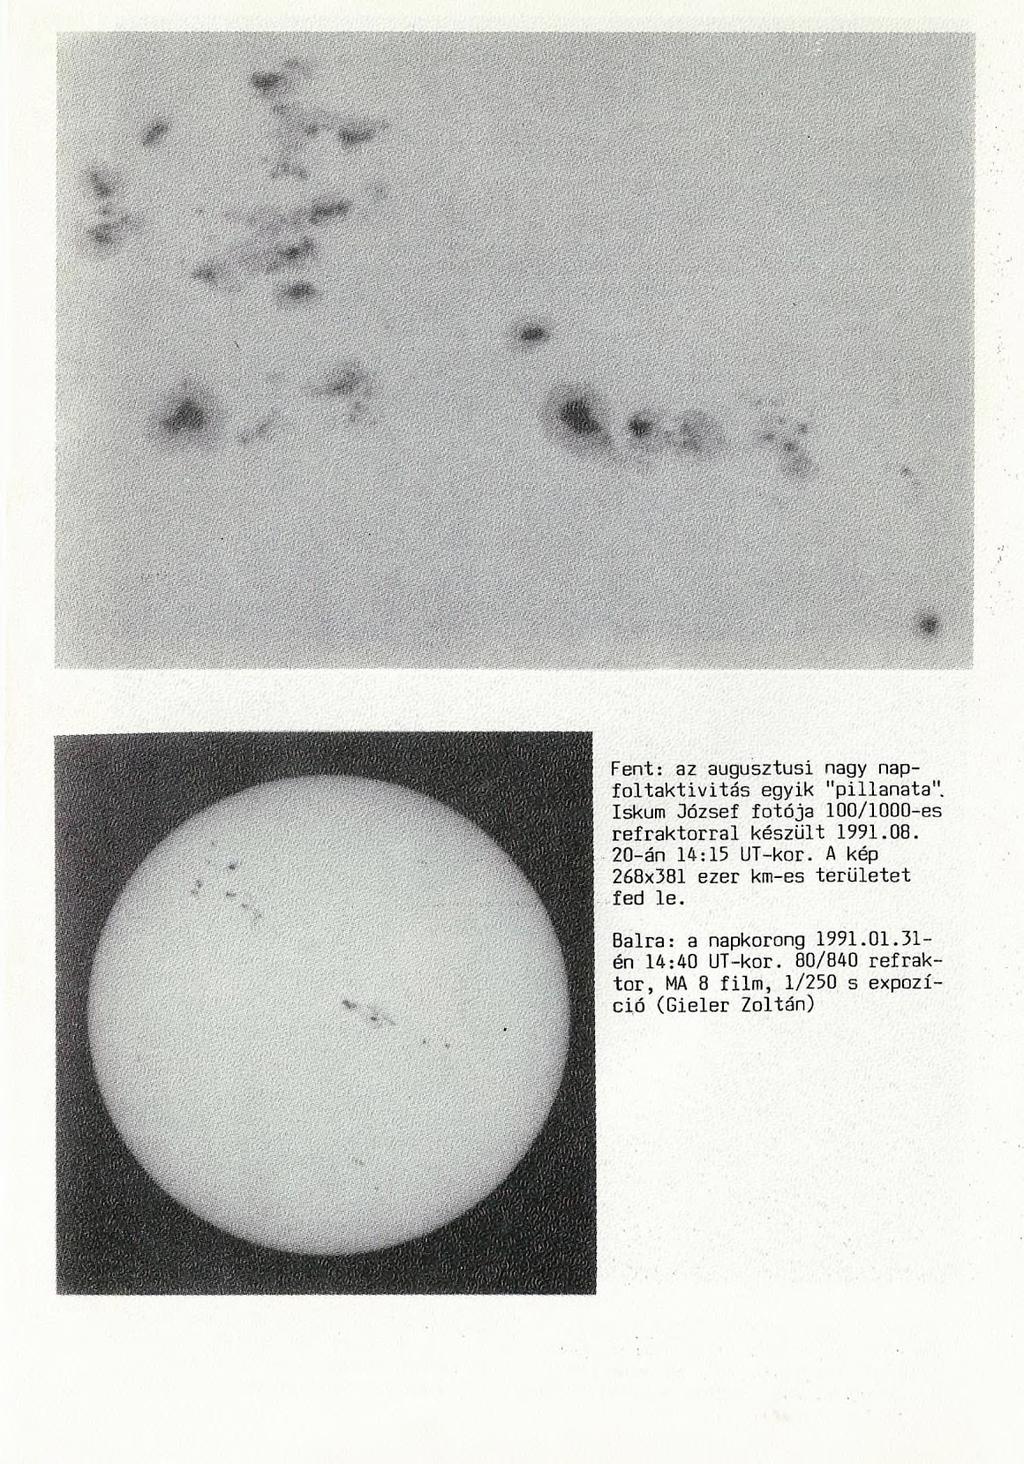 Fent: az augusztusi nagy napfoltaktivitás egyik "pillanata". Iskum 3ózsef fotója 100/1000-es refraktorral készült 1991.08. 20-án 14:15 UT-kor.